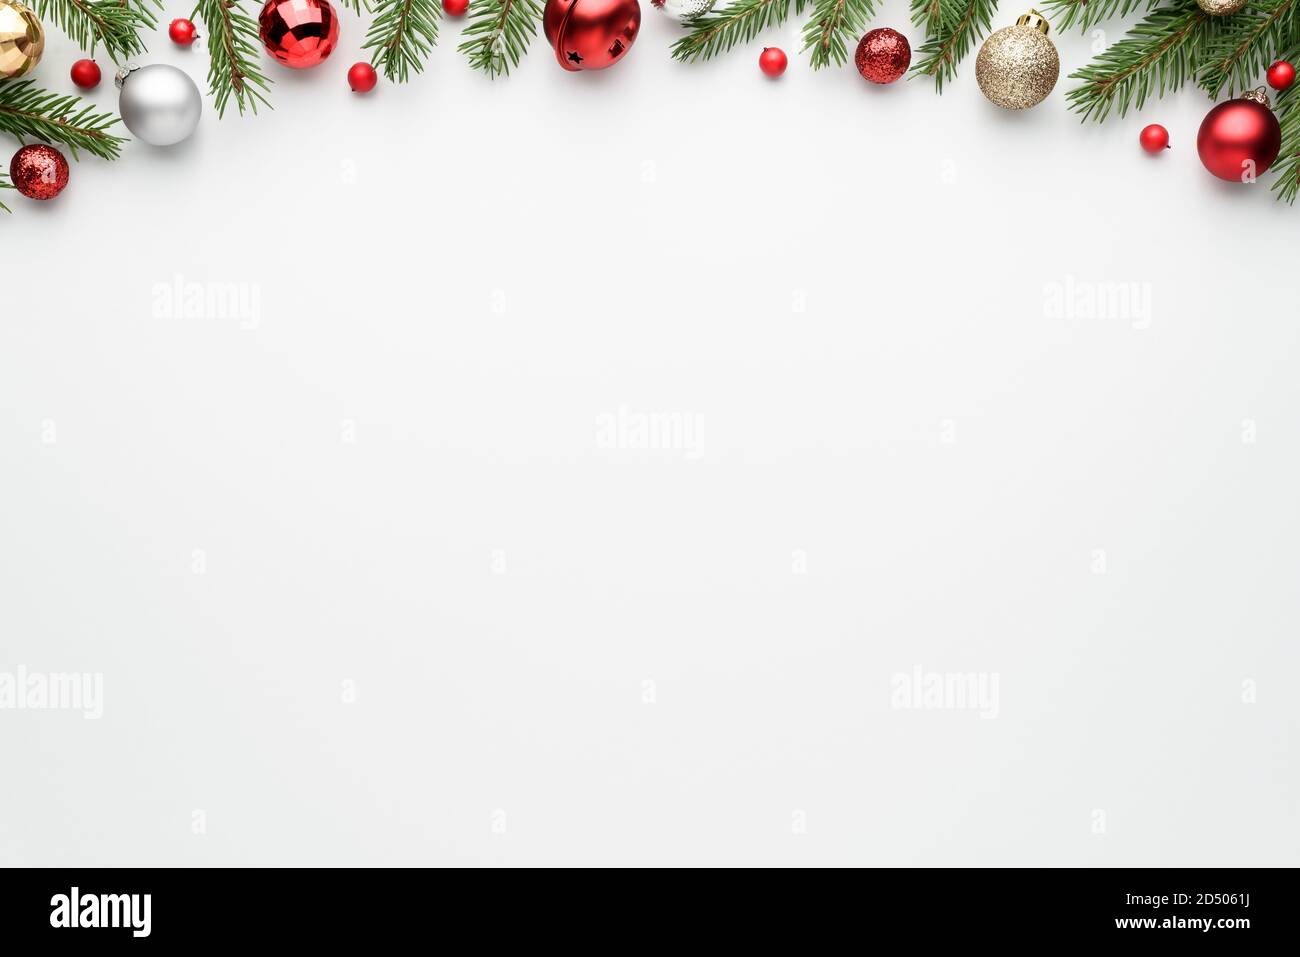 Fond blanc d'arbre de noël avec branches et décorations de sapin. Cadre « Happy Holidays » avec espace pour le texte des fêtes. Vue de dessus, plan d'appartement Banque D'Images